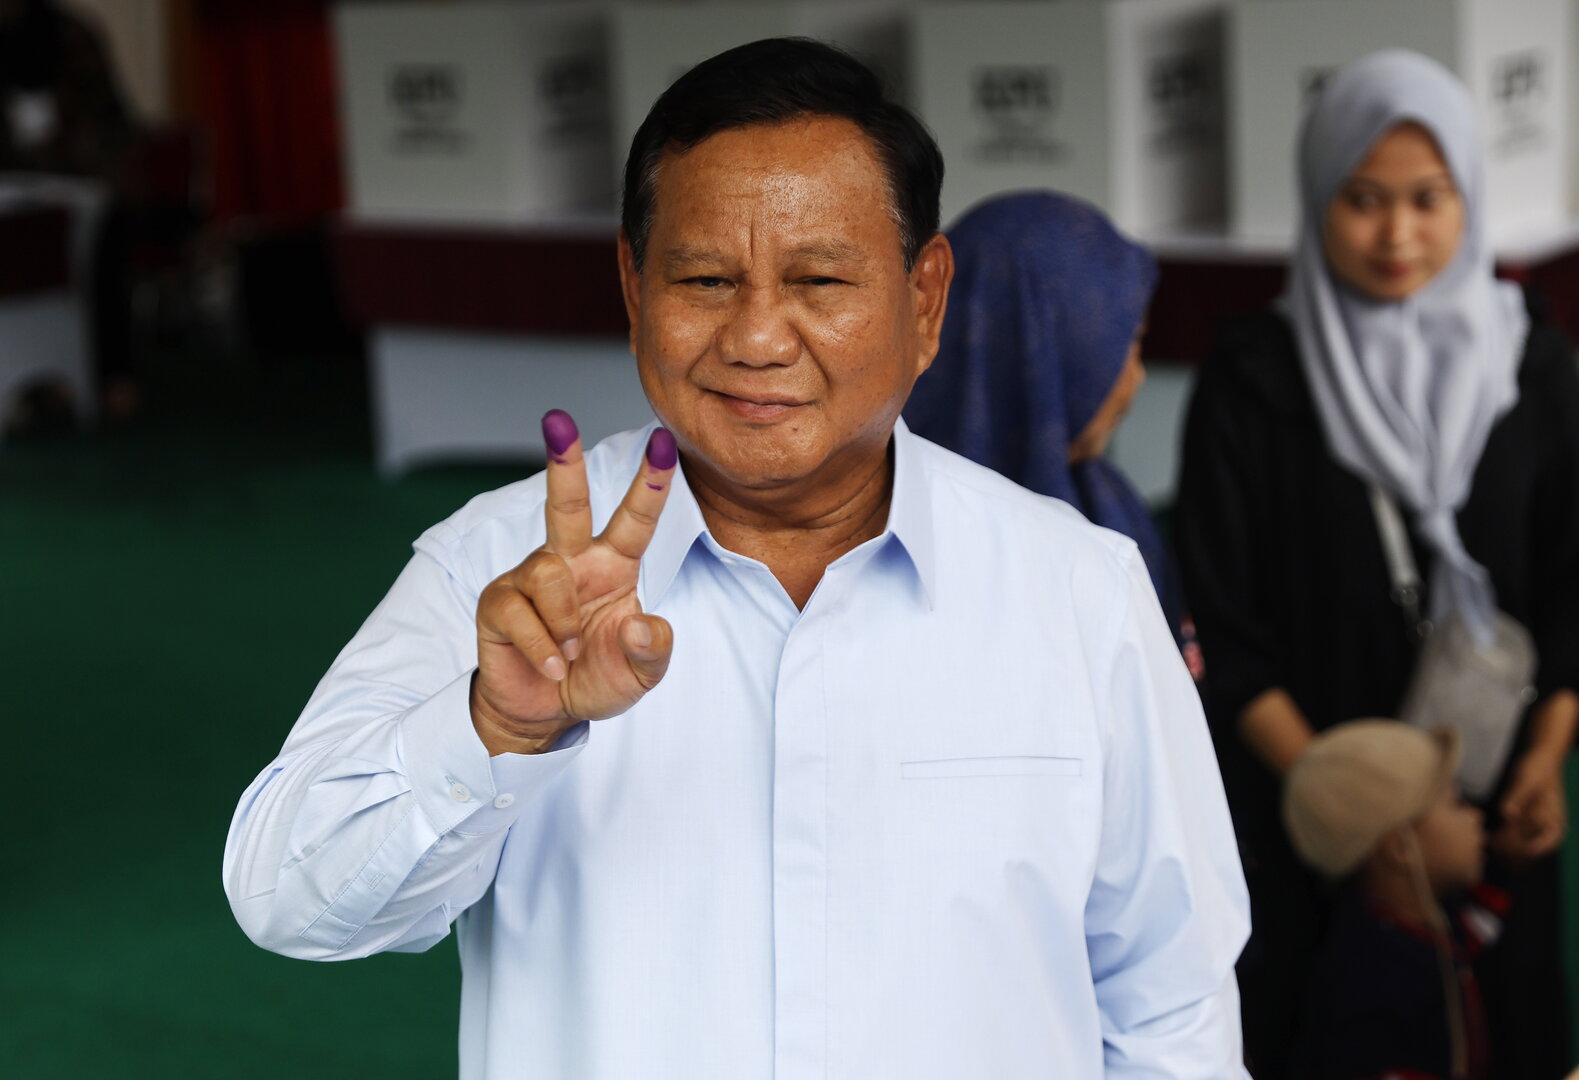 indonesien: 59 prozent für ex-general prabowo bei präsidentenwahl